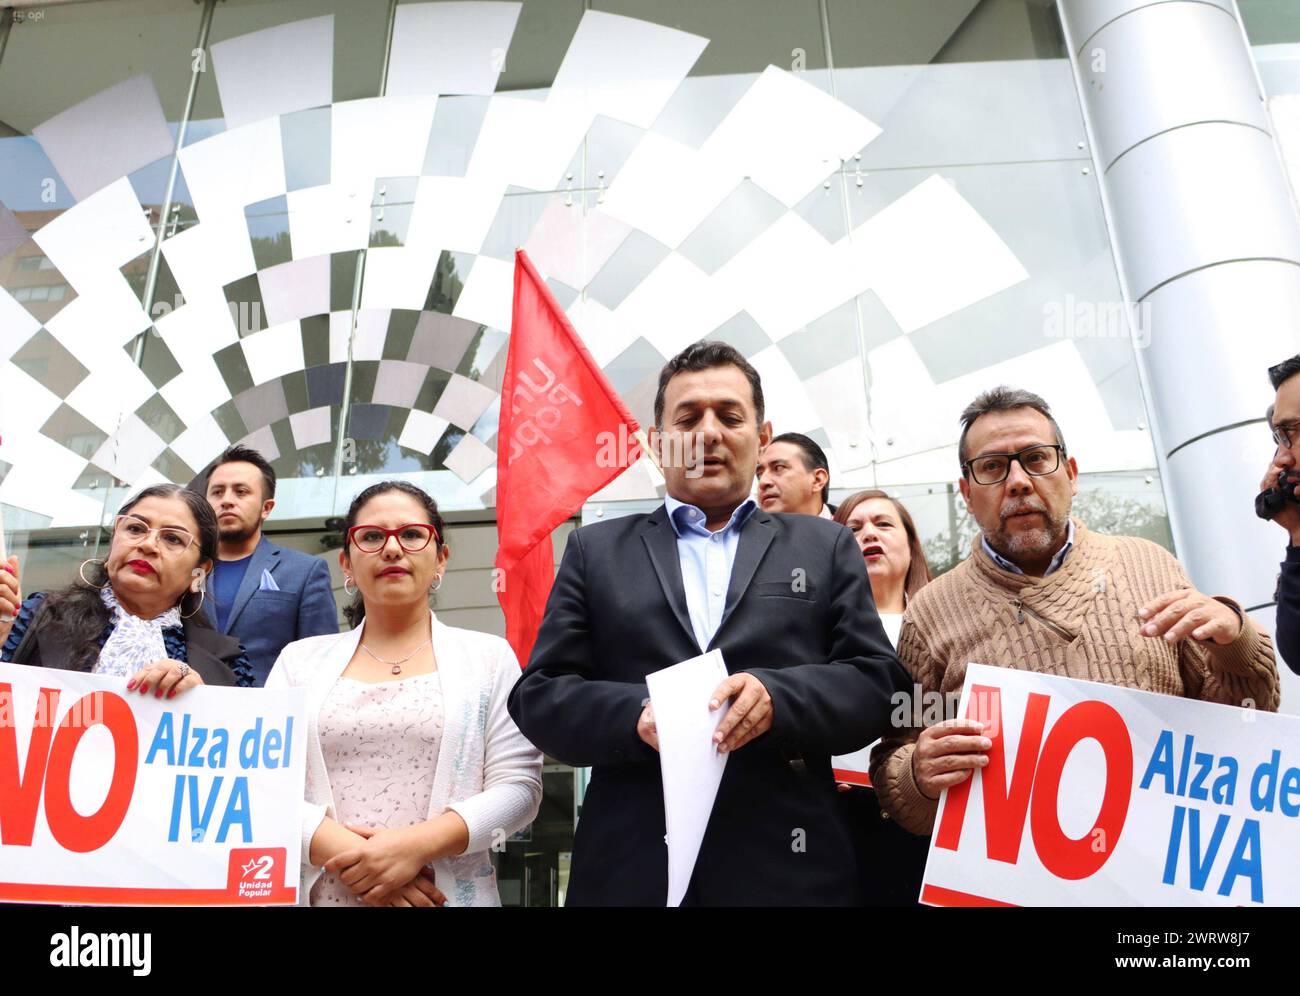 DEMANADA-INCONSTUCIONALIDAD-ALZA-IVA Quito, jueves 14 de marzo del 2024 El movimiento Unidad Popular, entrega una Demanda de Inconstitucionalidad, en la Corte Constitucional, en contra del alza de la elevacion del IVA, por parte del Gobierno Nacional. Fotos:Rolando Enriquez/API Quito Pichincha Ecuador POL-DEMANADA-INCONSTUCIONALIDAD-ALZA-IVA-432fd82dbdf87335fe5d06c0e5e34976 *** UNCONSTITUTIONALITY LAWSUIT VAT INCREASE Quito, Thursday, March 14, 2024 The Popular Unity movement filed an unconstitutionality lawsuit in the Constitutional Court against the VAT increase by the National Government Ph Stock Photo